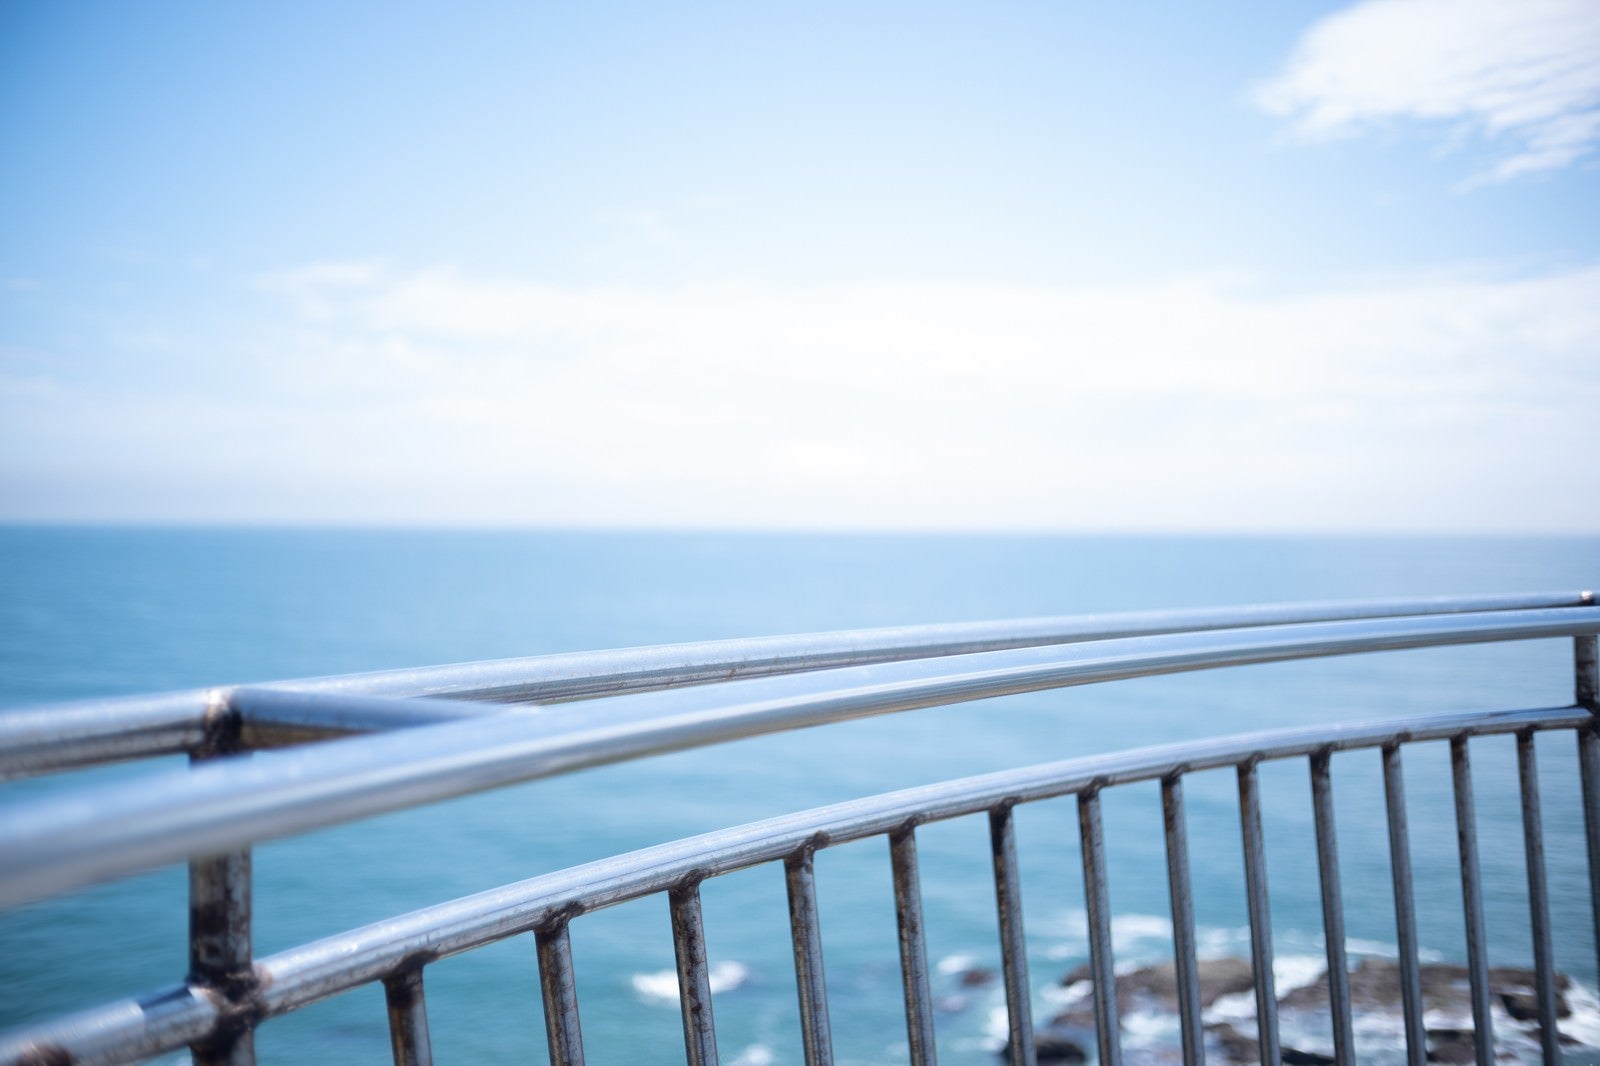 「犬吠埼灯台から見た景色」の写真